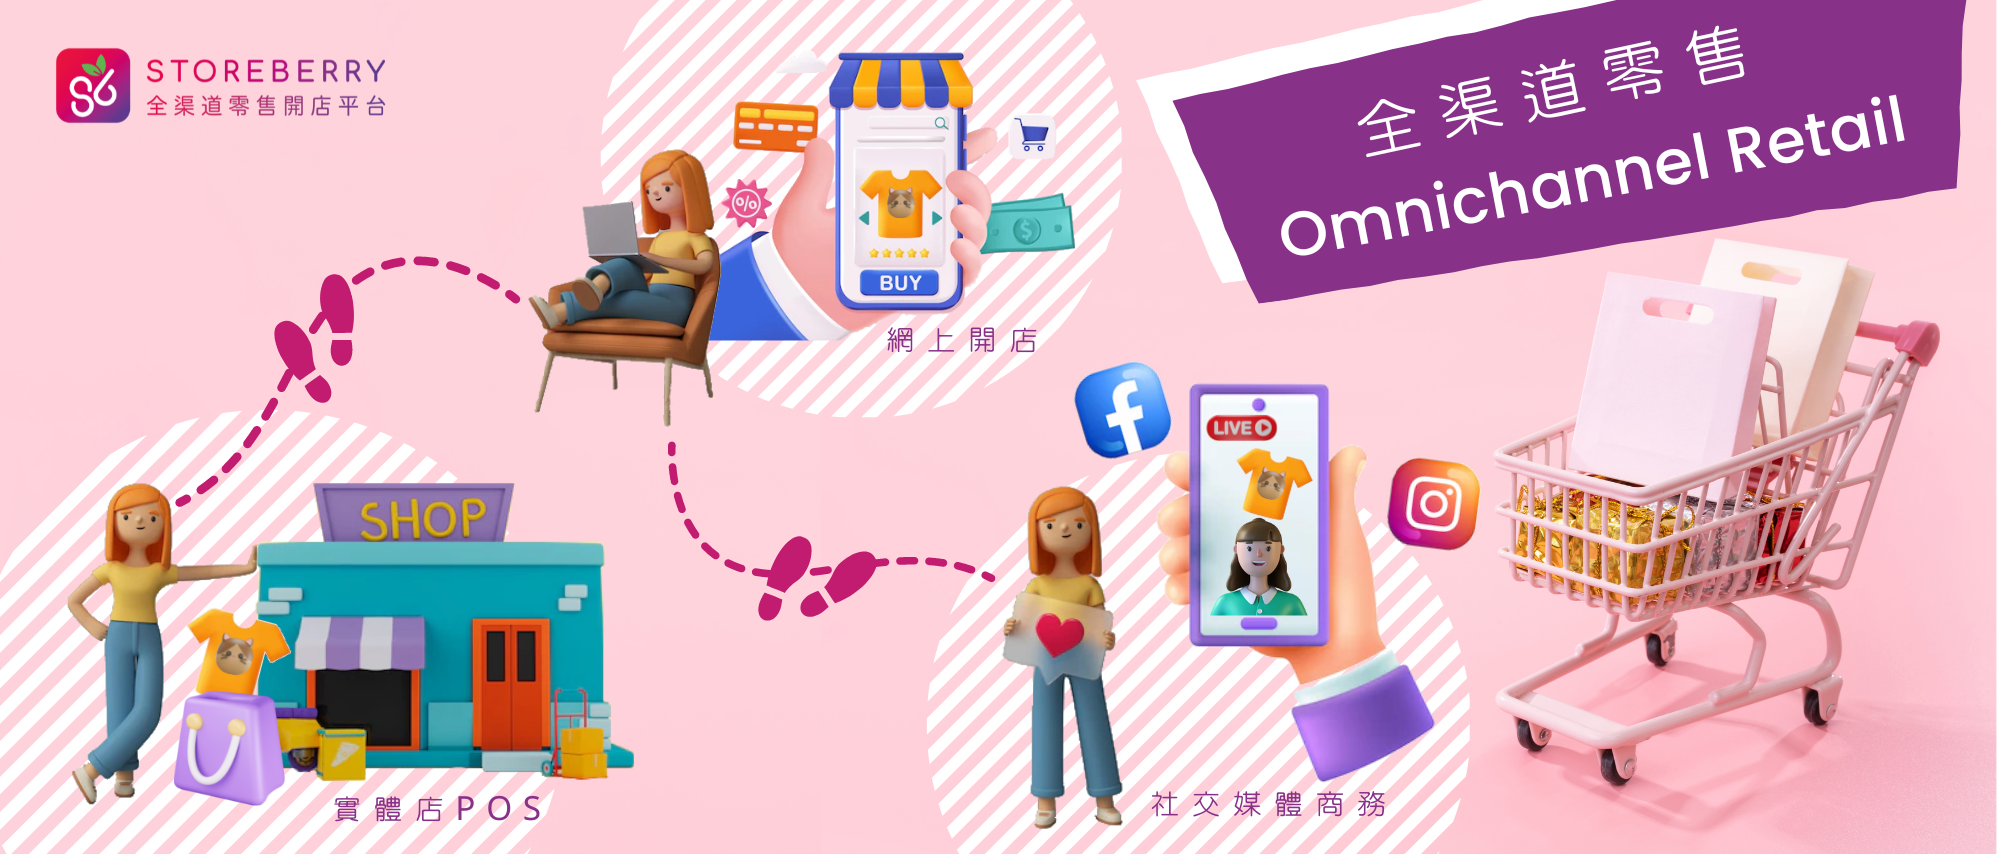  Storeberry |【電商零售系統】全渠道零售 Omnichannel Retail 是什麼?